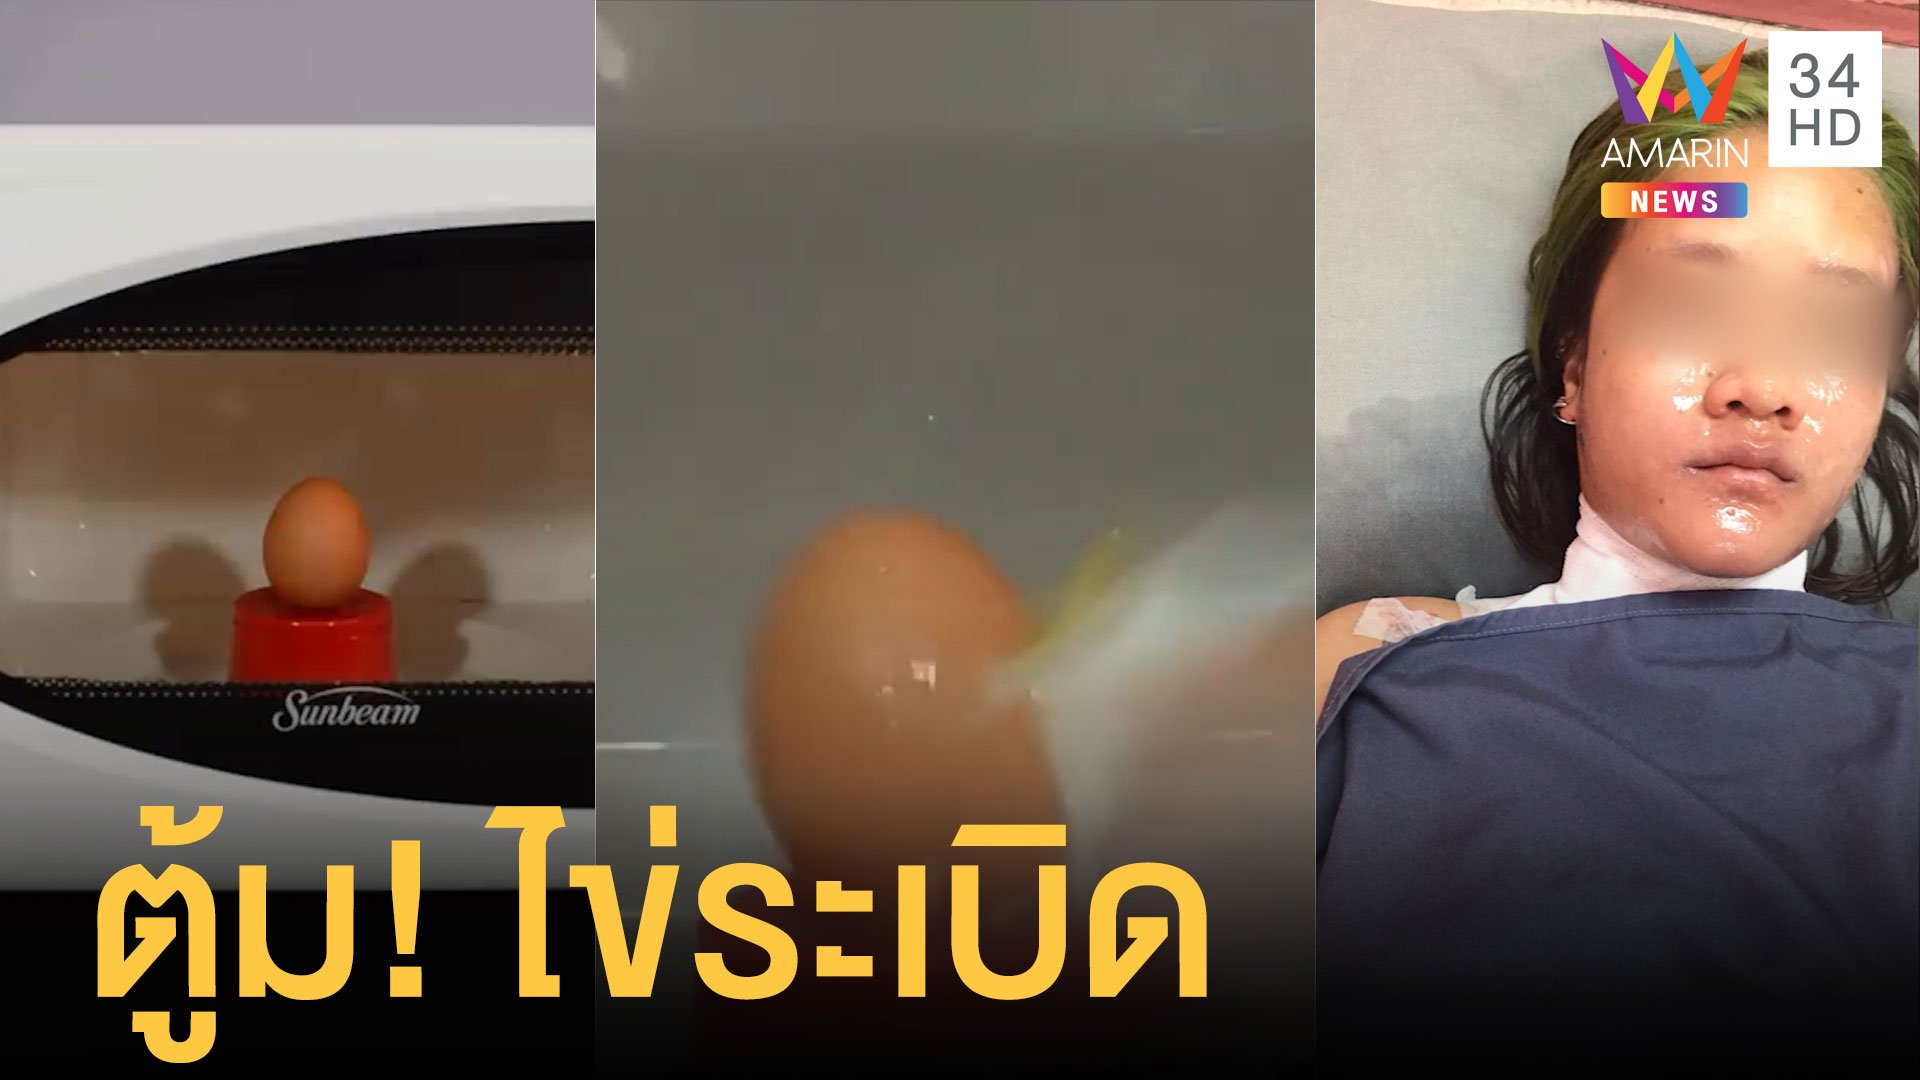 เตือนภัย ต้มไข่ในไมโครเวฟ ระเบิดใส่หน้าสาวเละ | ข่าวอรุณอมรินทร์ | 3 ส.ค. 63 | AMARIN TVHD34